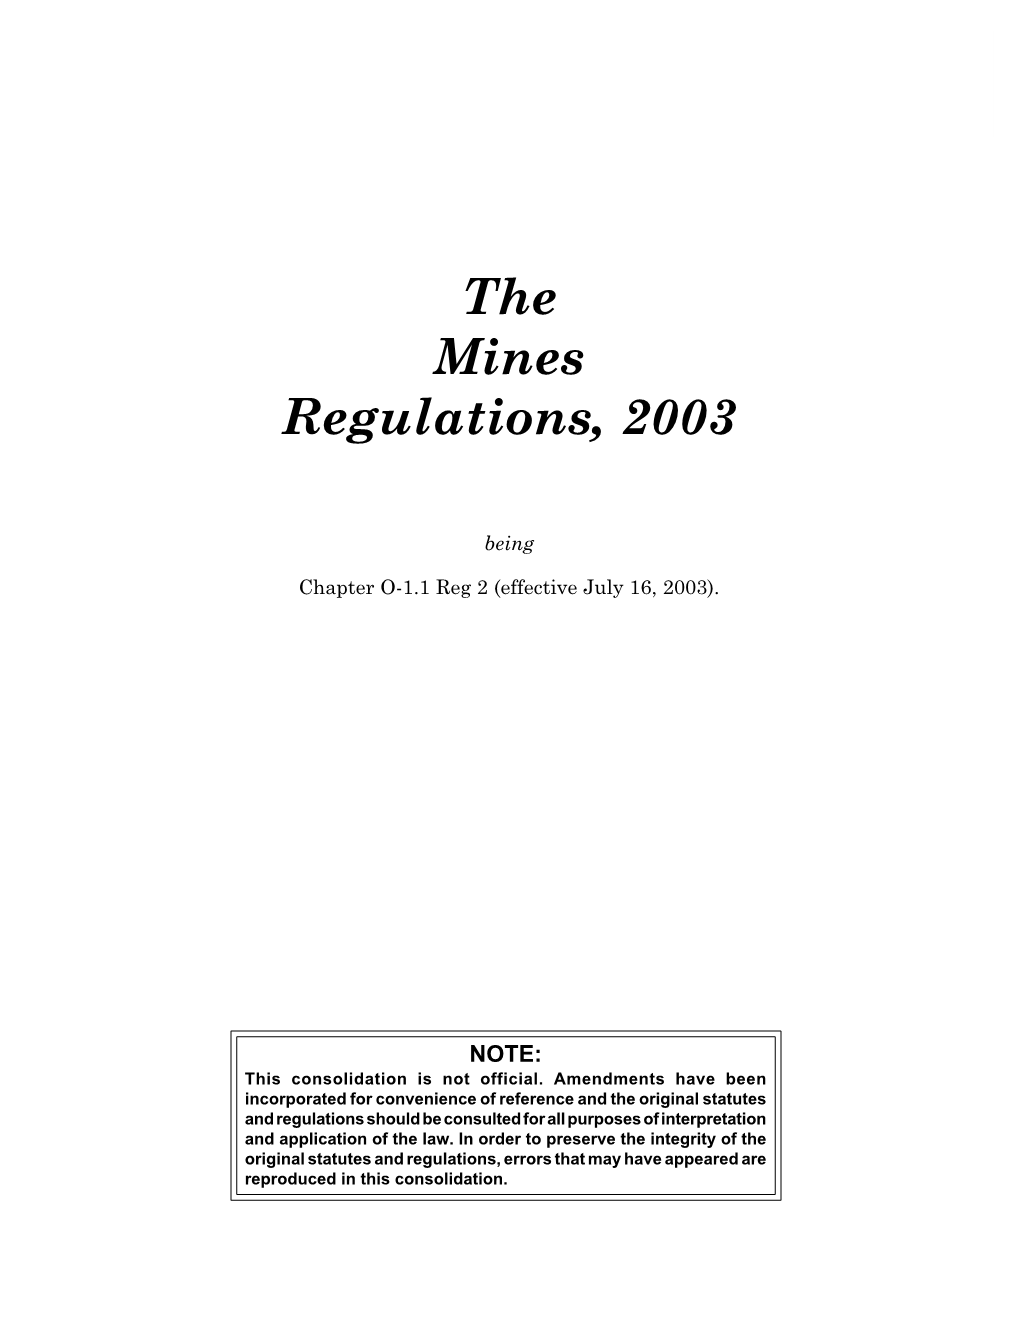 Mines Regulations, 2003